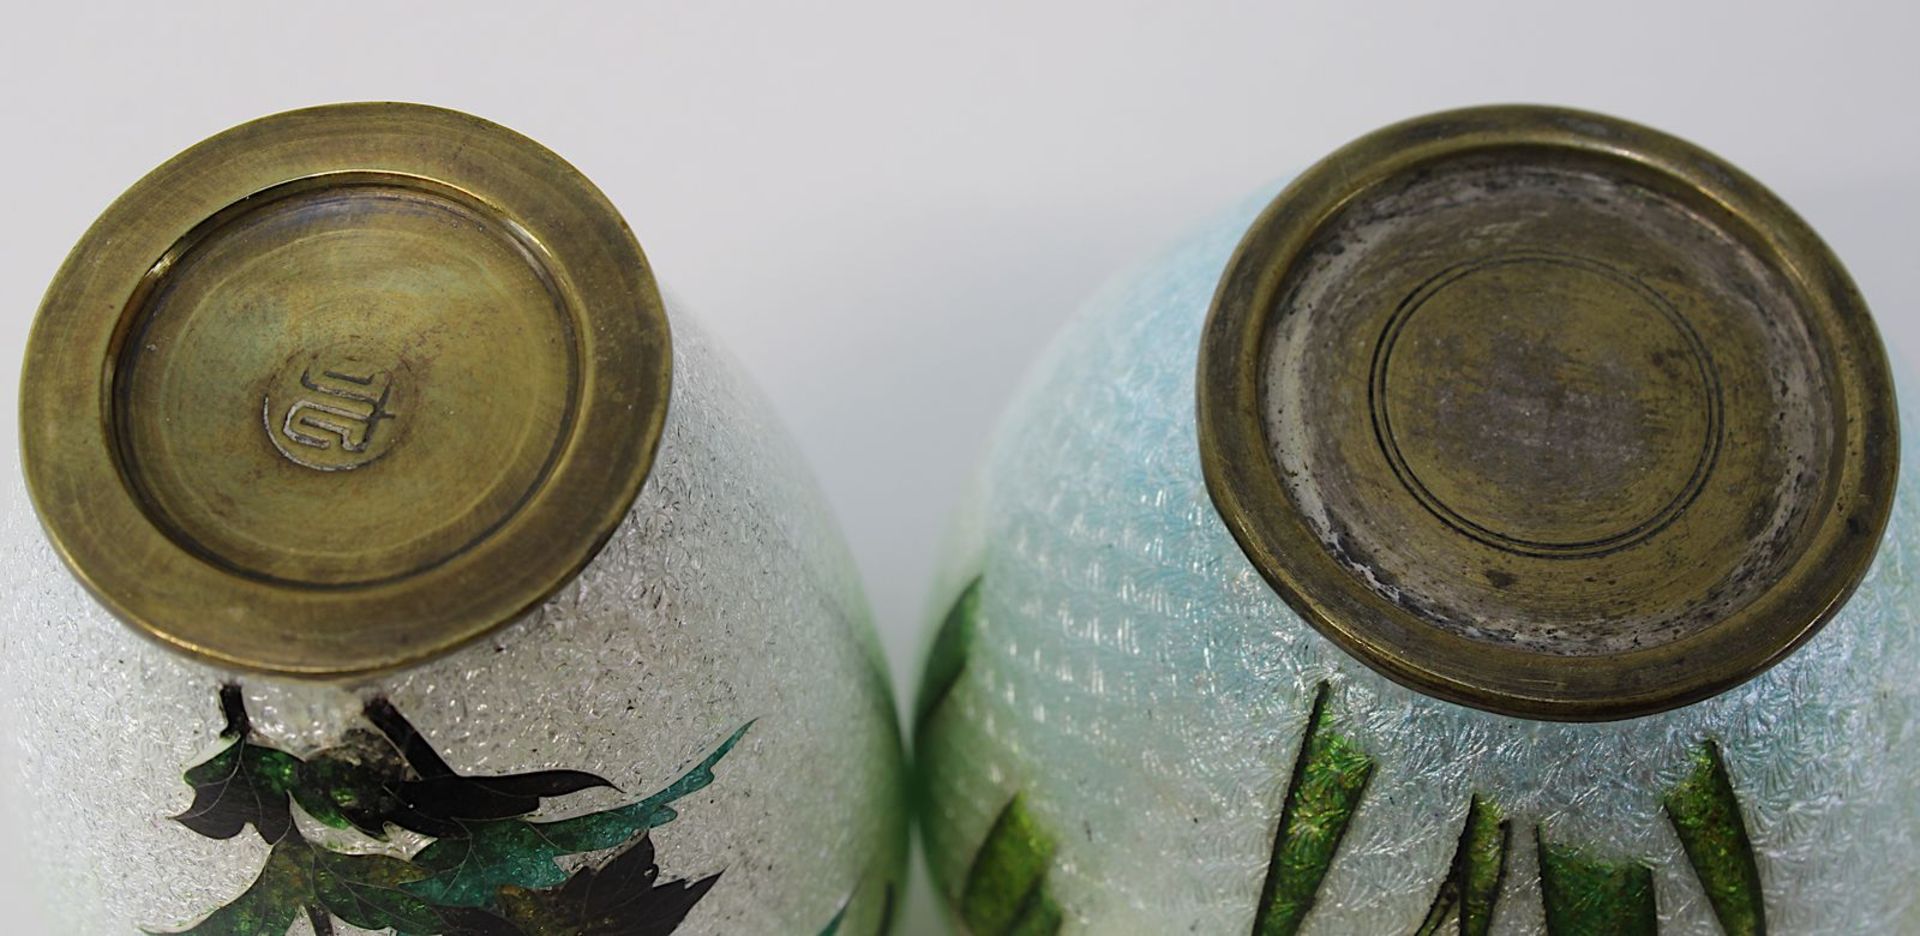 2 Miniatur-Vasen Cloisonné auf guillochiertem Grund, Japan um 1900, jew. Messingkorpus belegt mit - Bild 3 aus 3